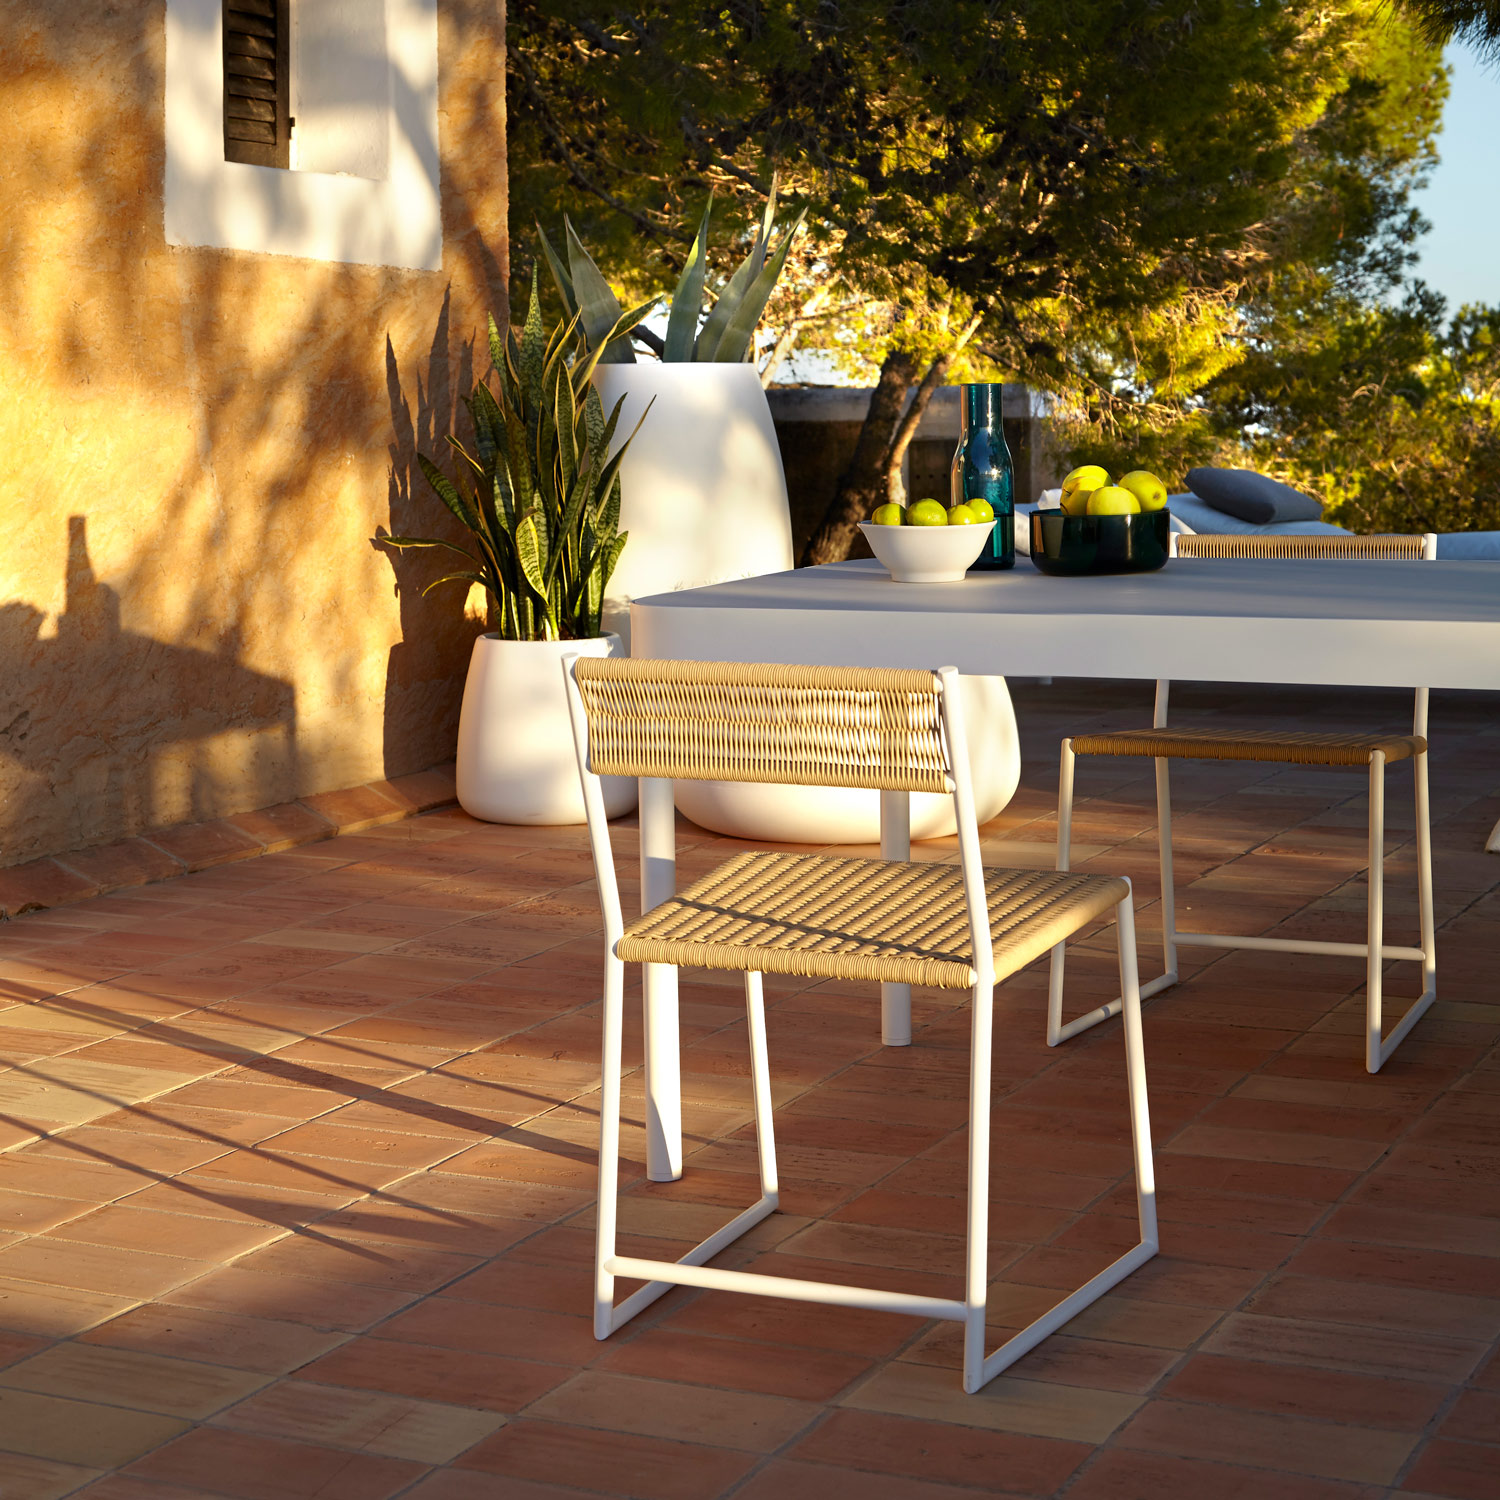 Tituna havemøbler der kan stå ude hele året er perfekte til det danske vejr fra Gitz Design og Gandia Blasco